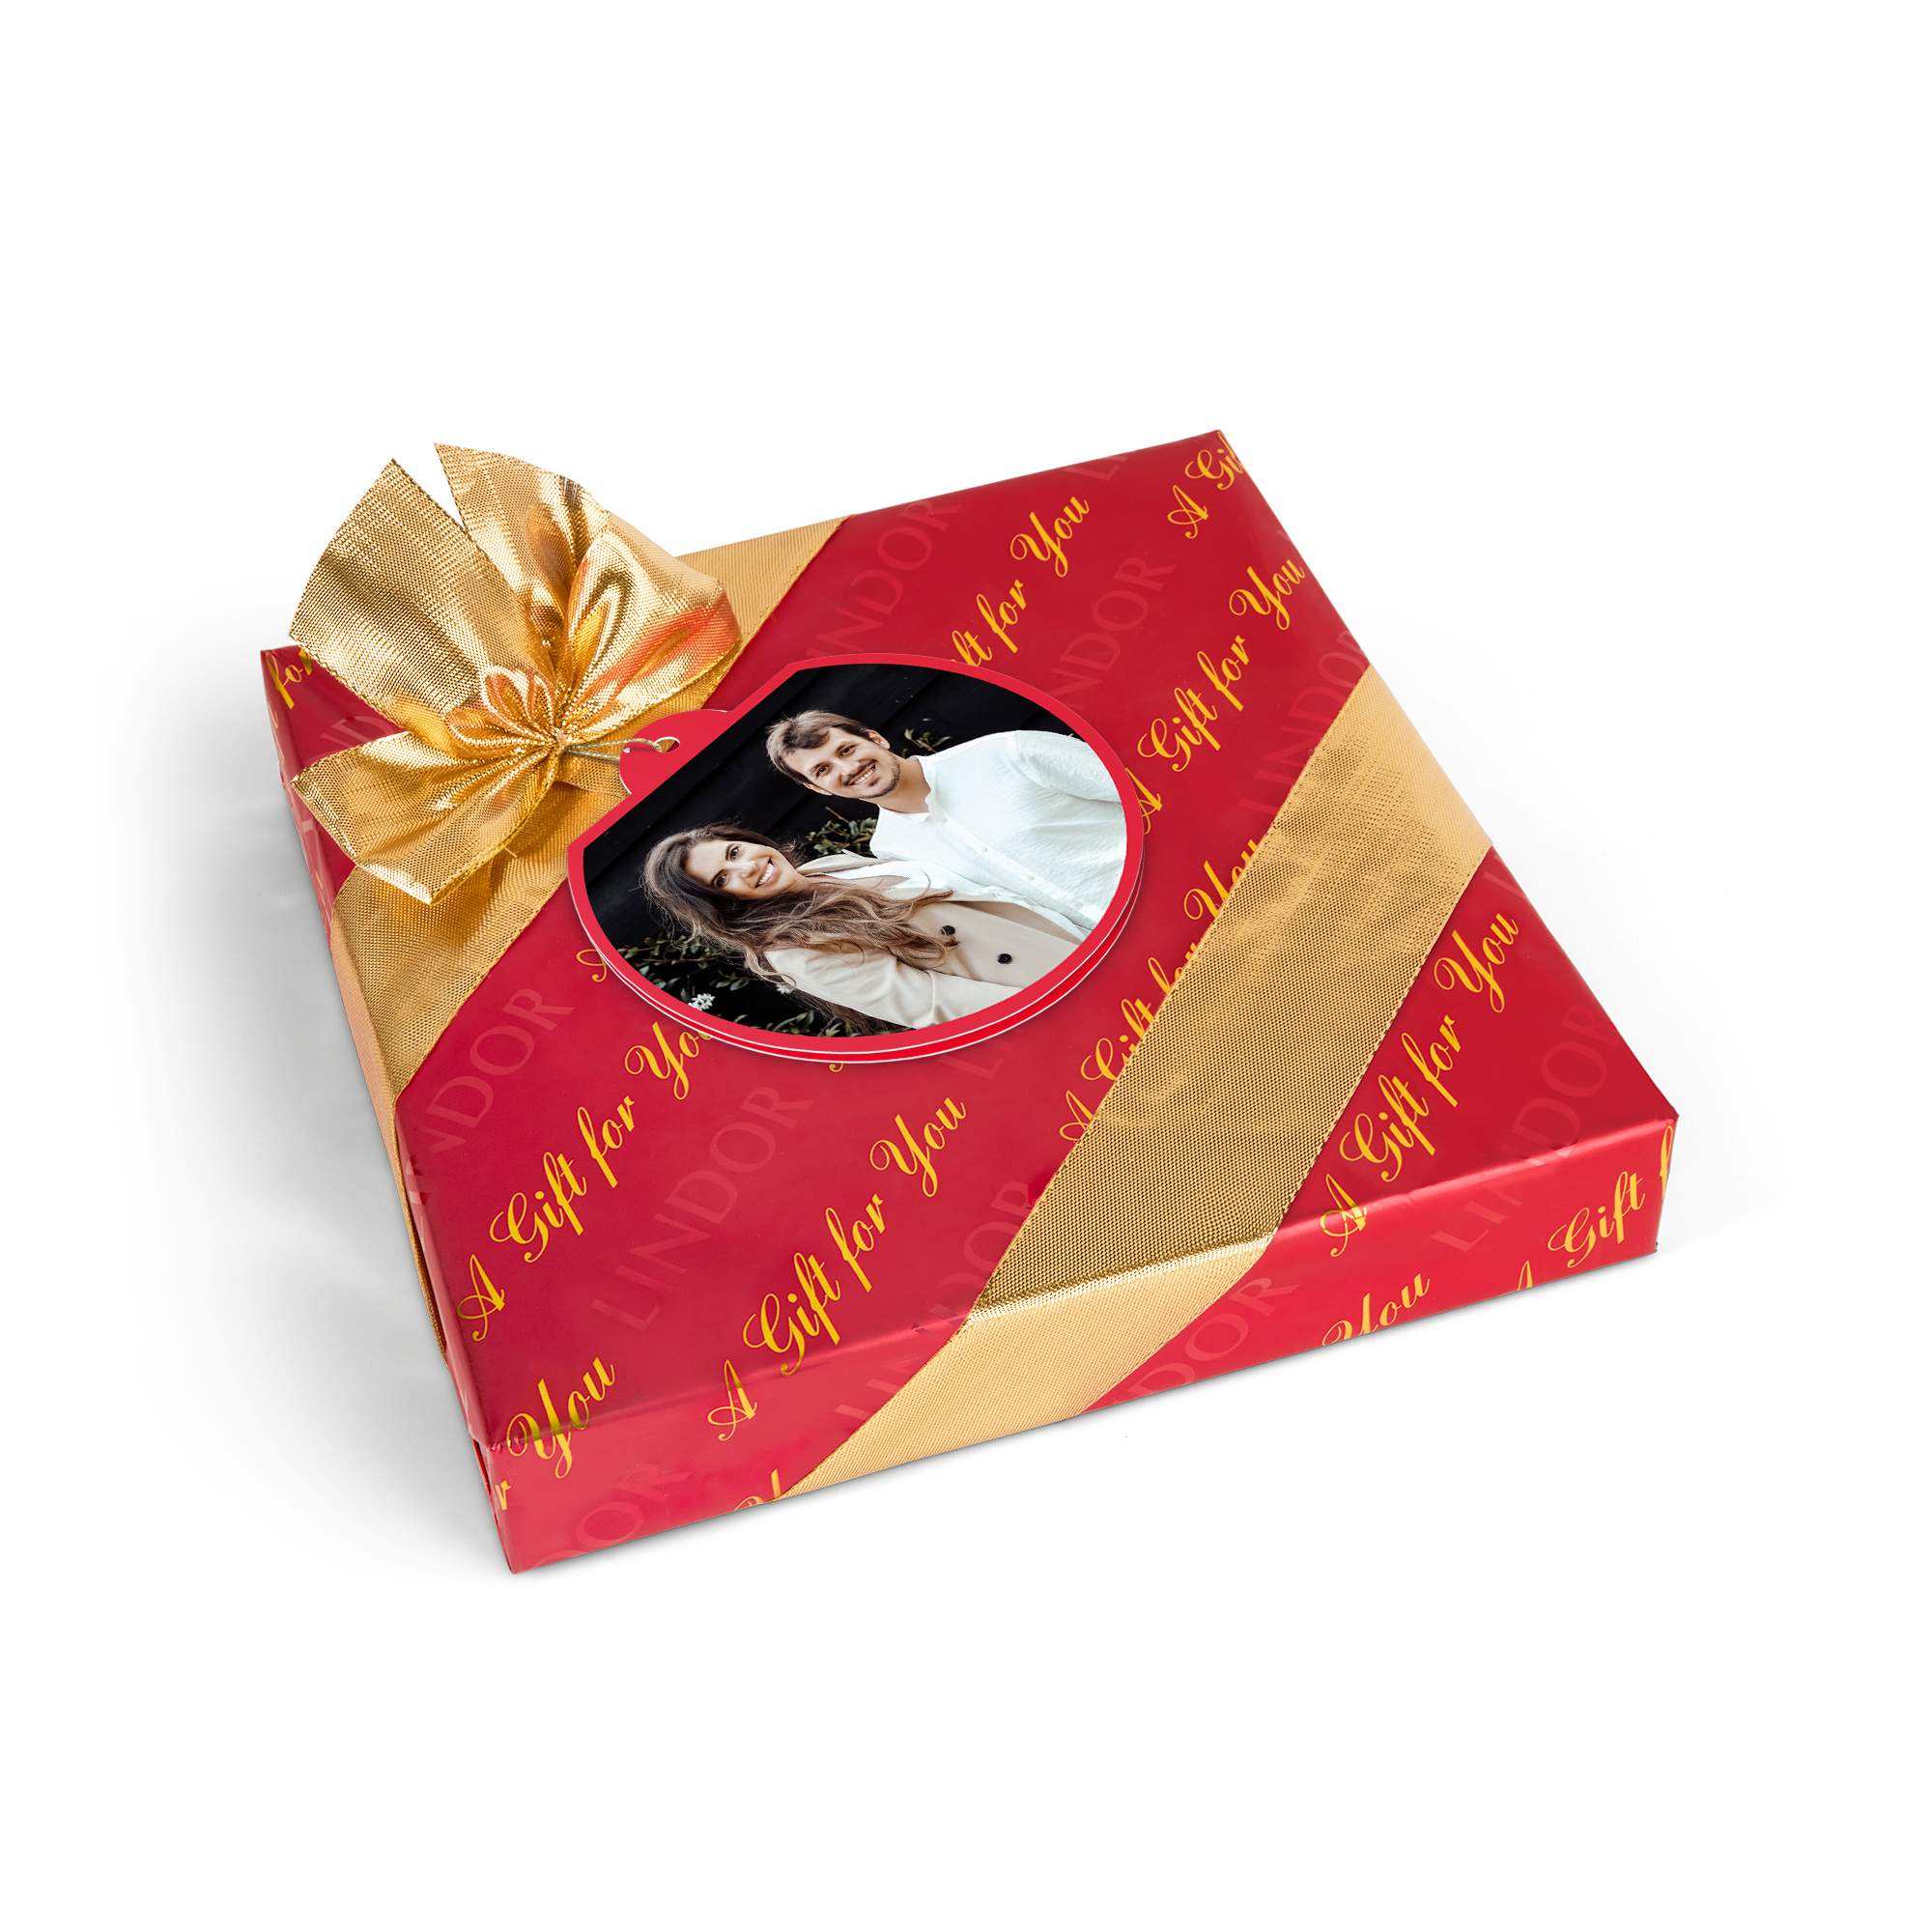 Boîte de chocolat Lindt avec carte